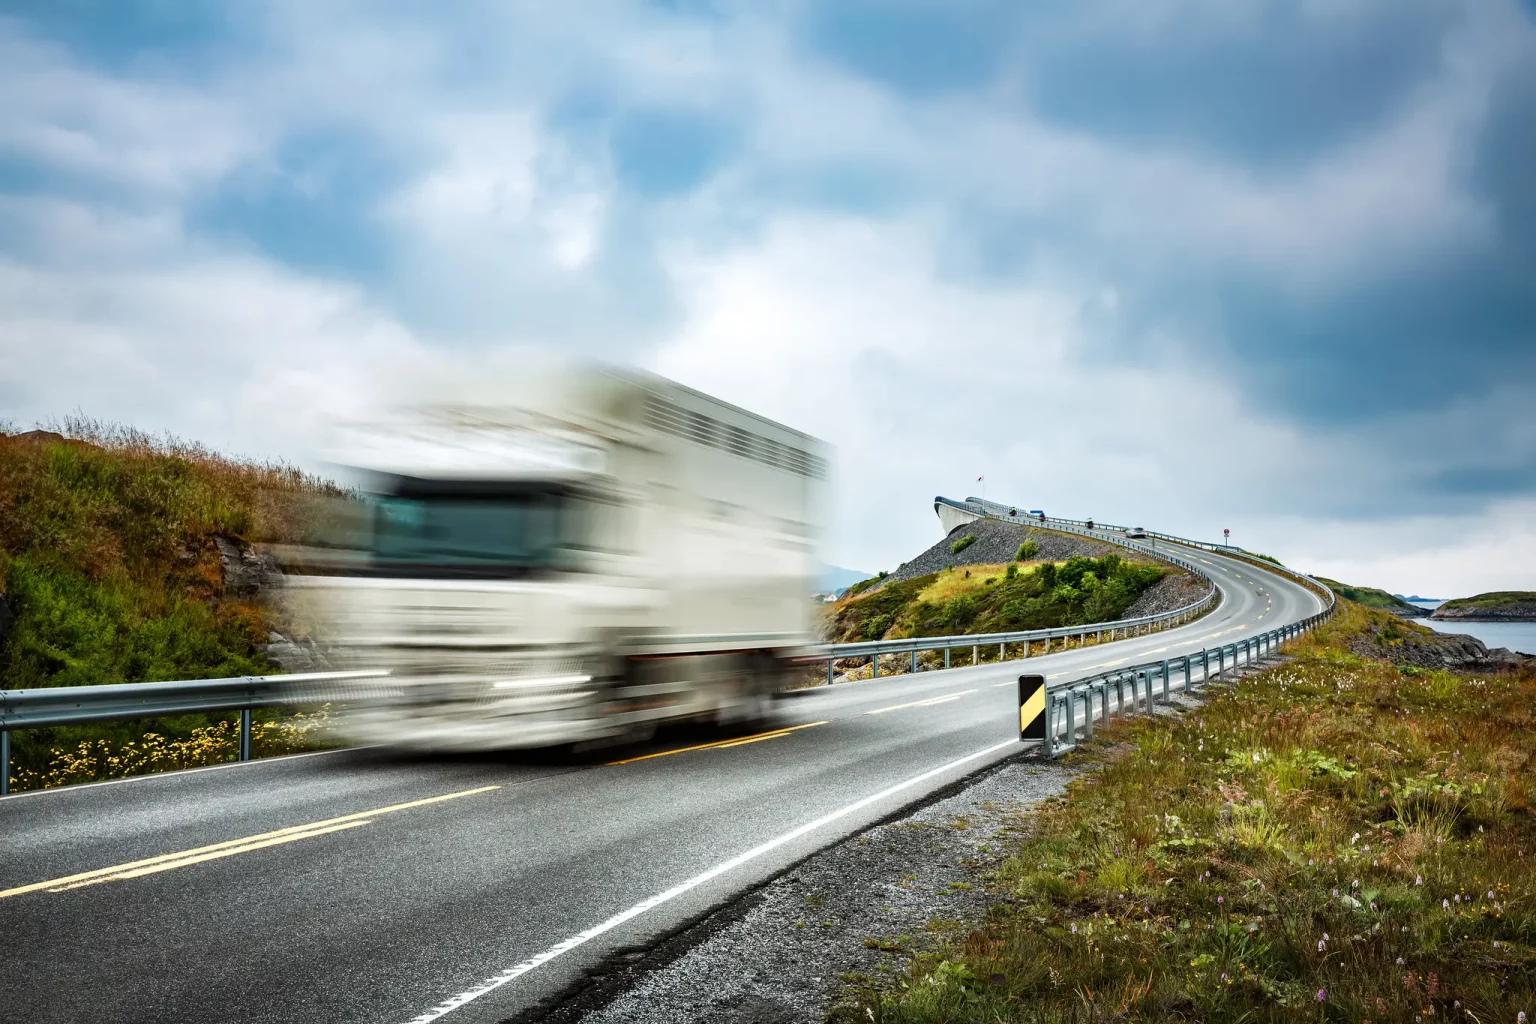 Camion de livraison rapide sur une route sinueuse, symbolisant le service de distribution agile et fiable pour les centrales d'achats.